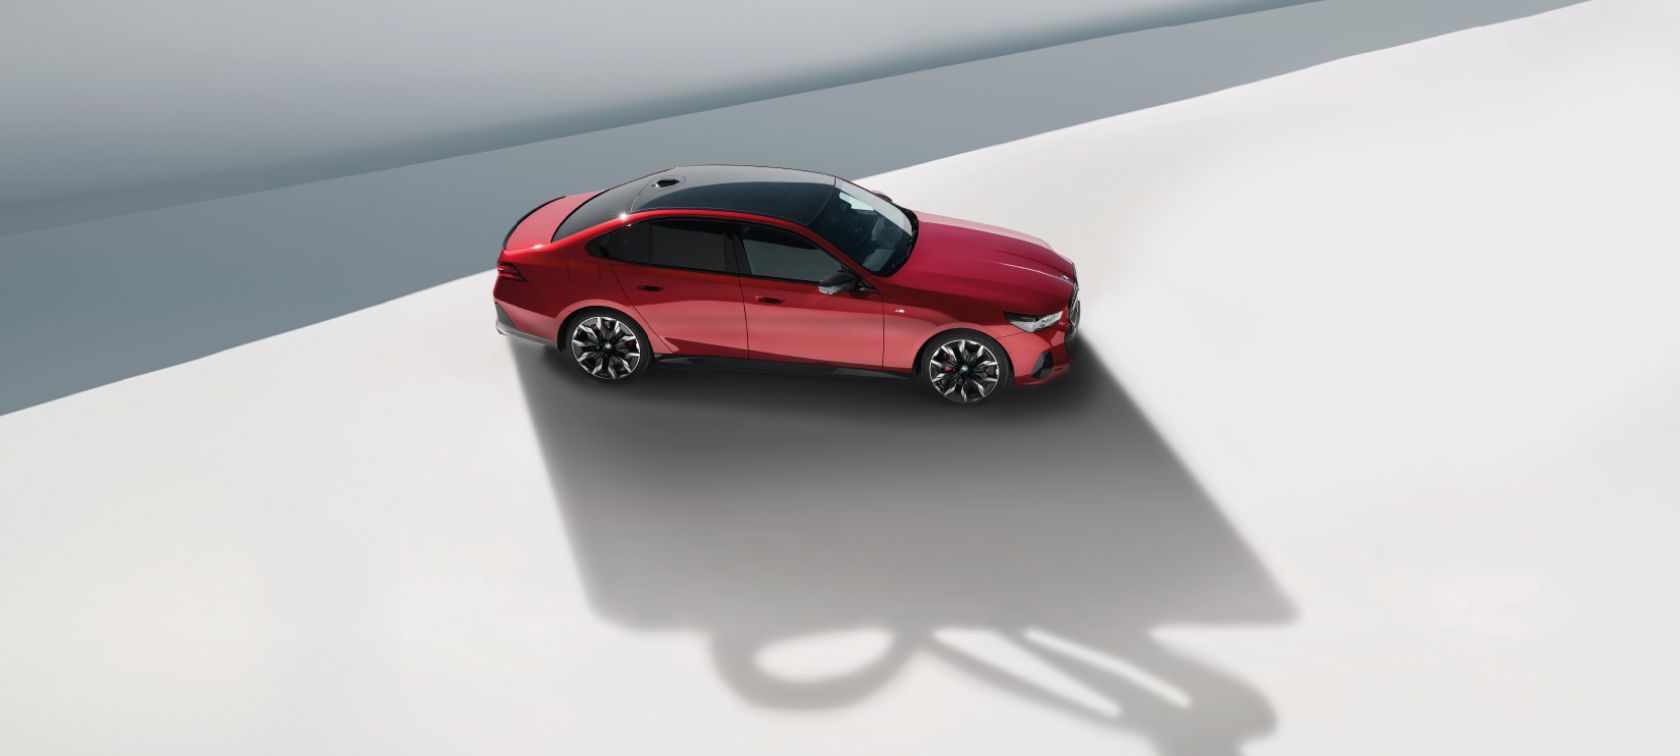 Wybierz nowe BMW z modeli dostępnych od ręki, które skrywa niespodziankę w bagażniku. Zyskaj komplet kół zimowych z korzyścią 50%.